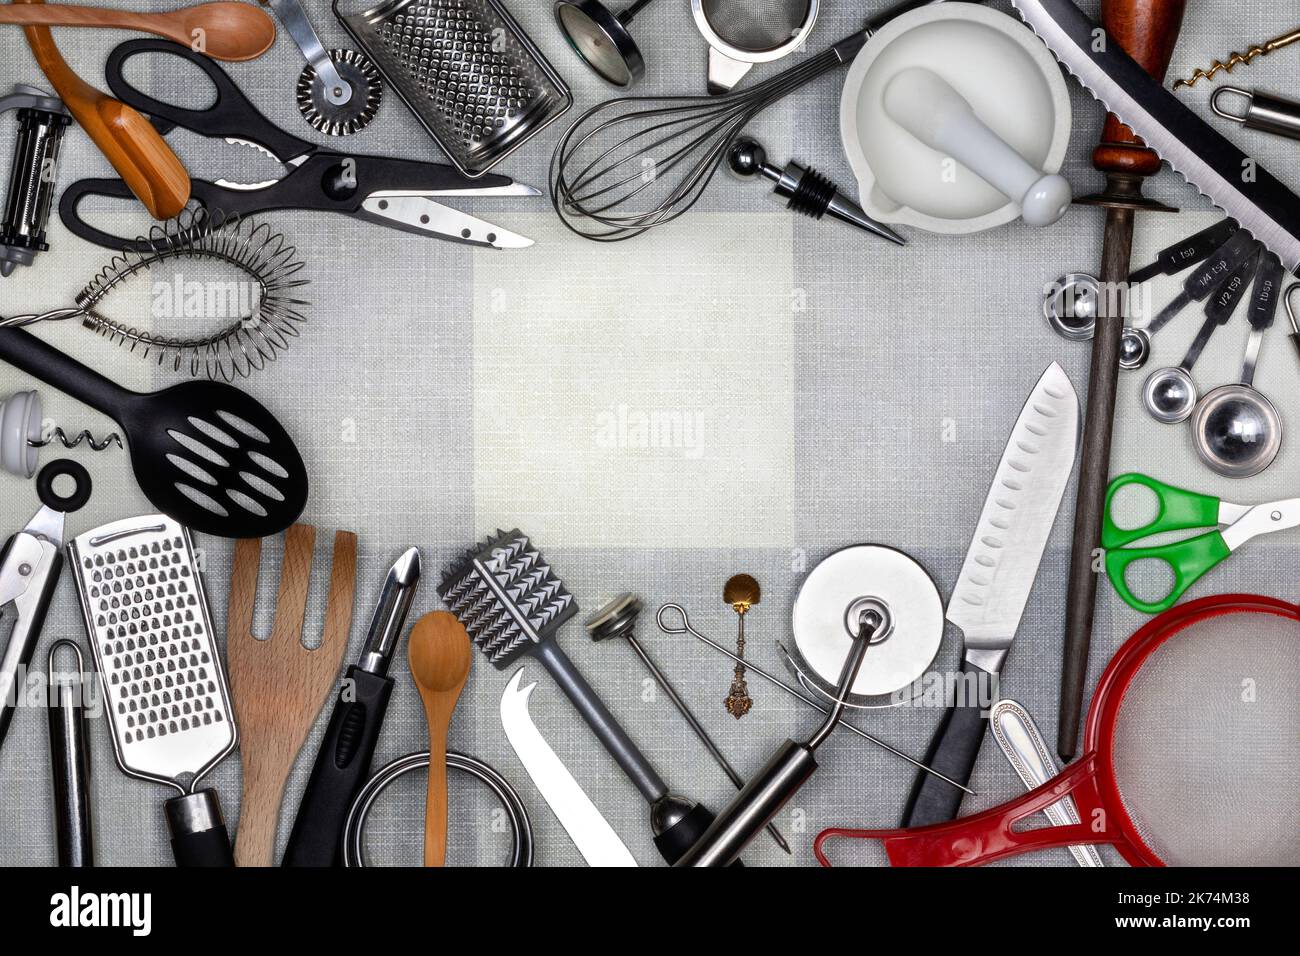 Ustensiles de cuisine - les ustensiles de cuisine sont de petits outils à main utilisés pour la préparation des aliments. Les tâches communes de cuisine incluent la coupe des aliments à la taille, baki Banque D'Images